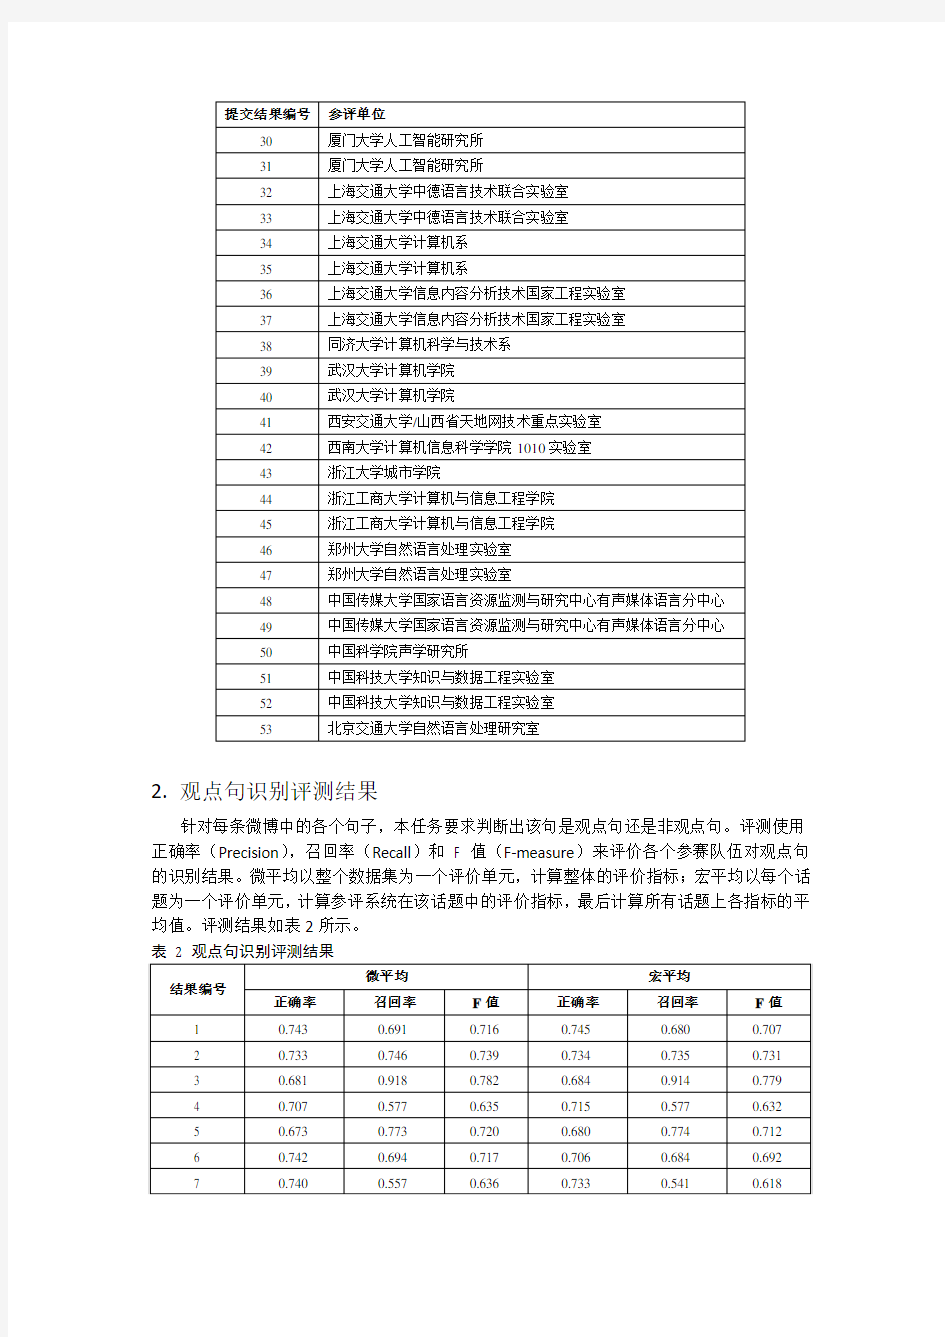 中文微博情感分析评测结果(2012)